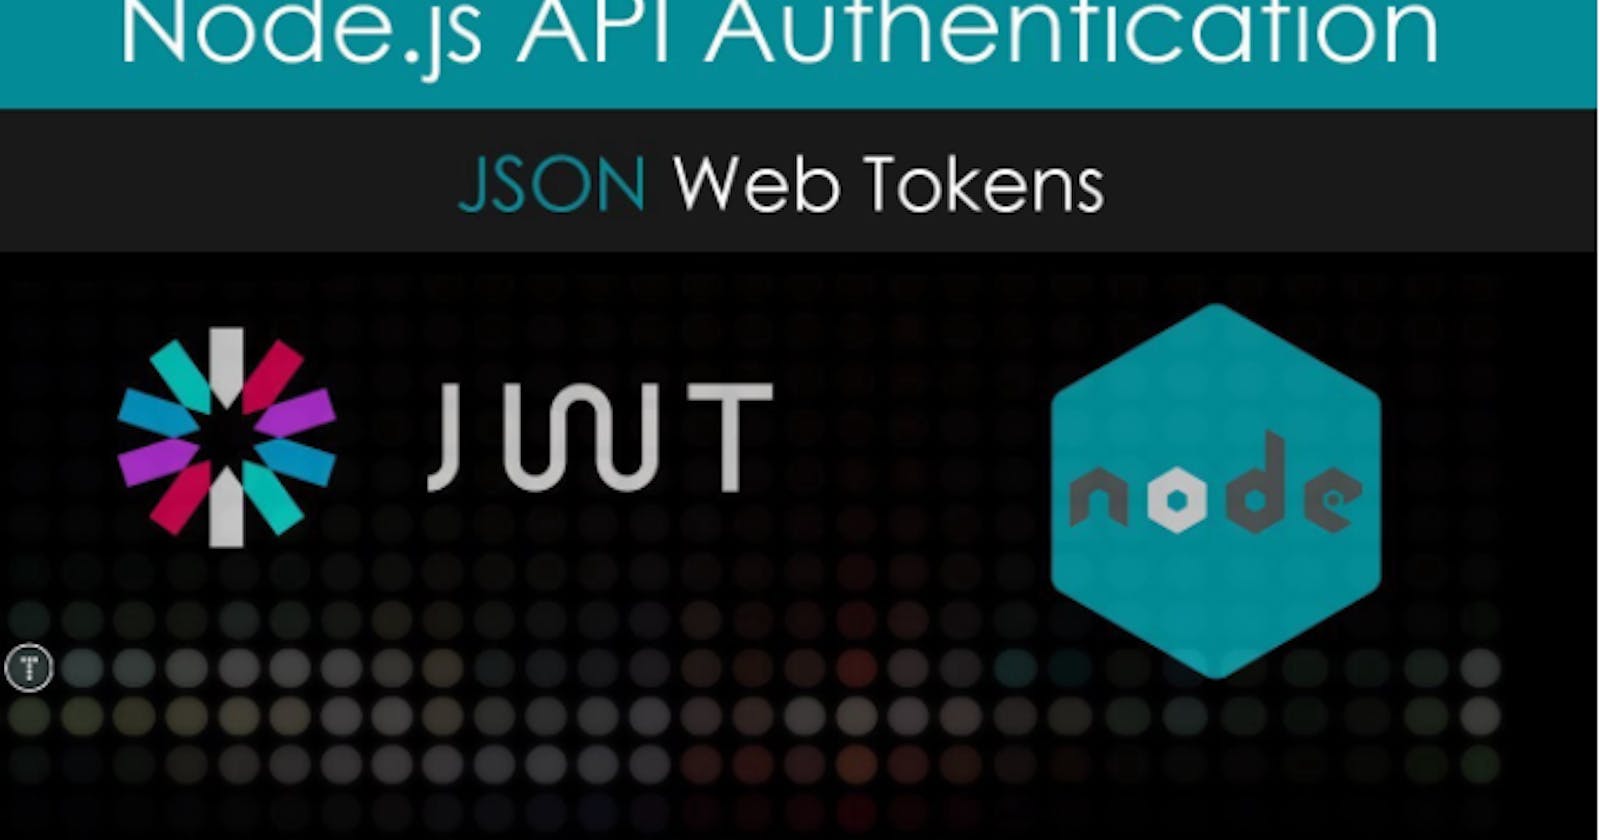 Node.js API Authentication with JSON Web Tokens